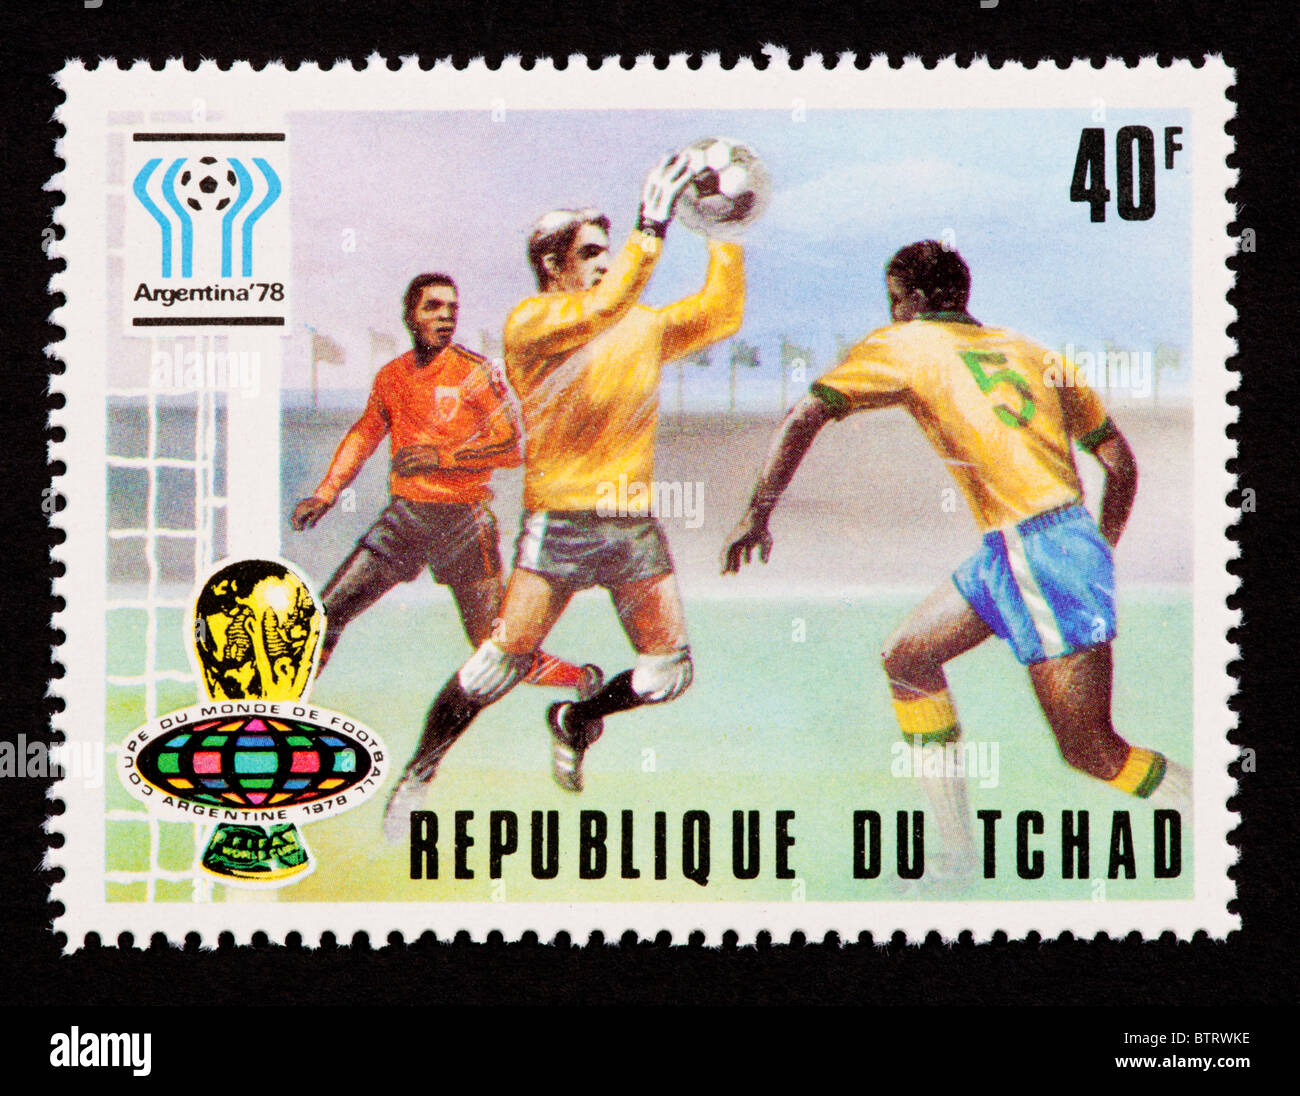 Timbre-poste représentant le Tchad à partir de joueurs de football de la Coupe du Monde 1978. Banque D'Images